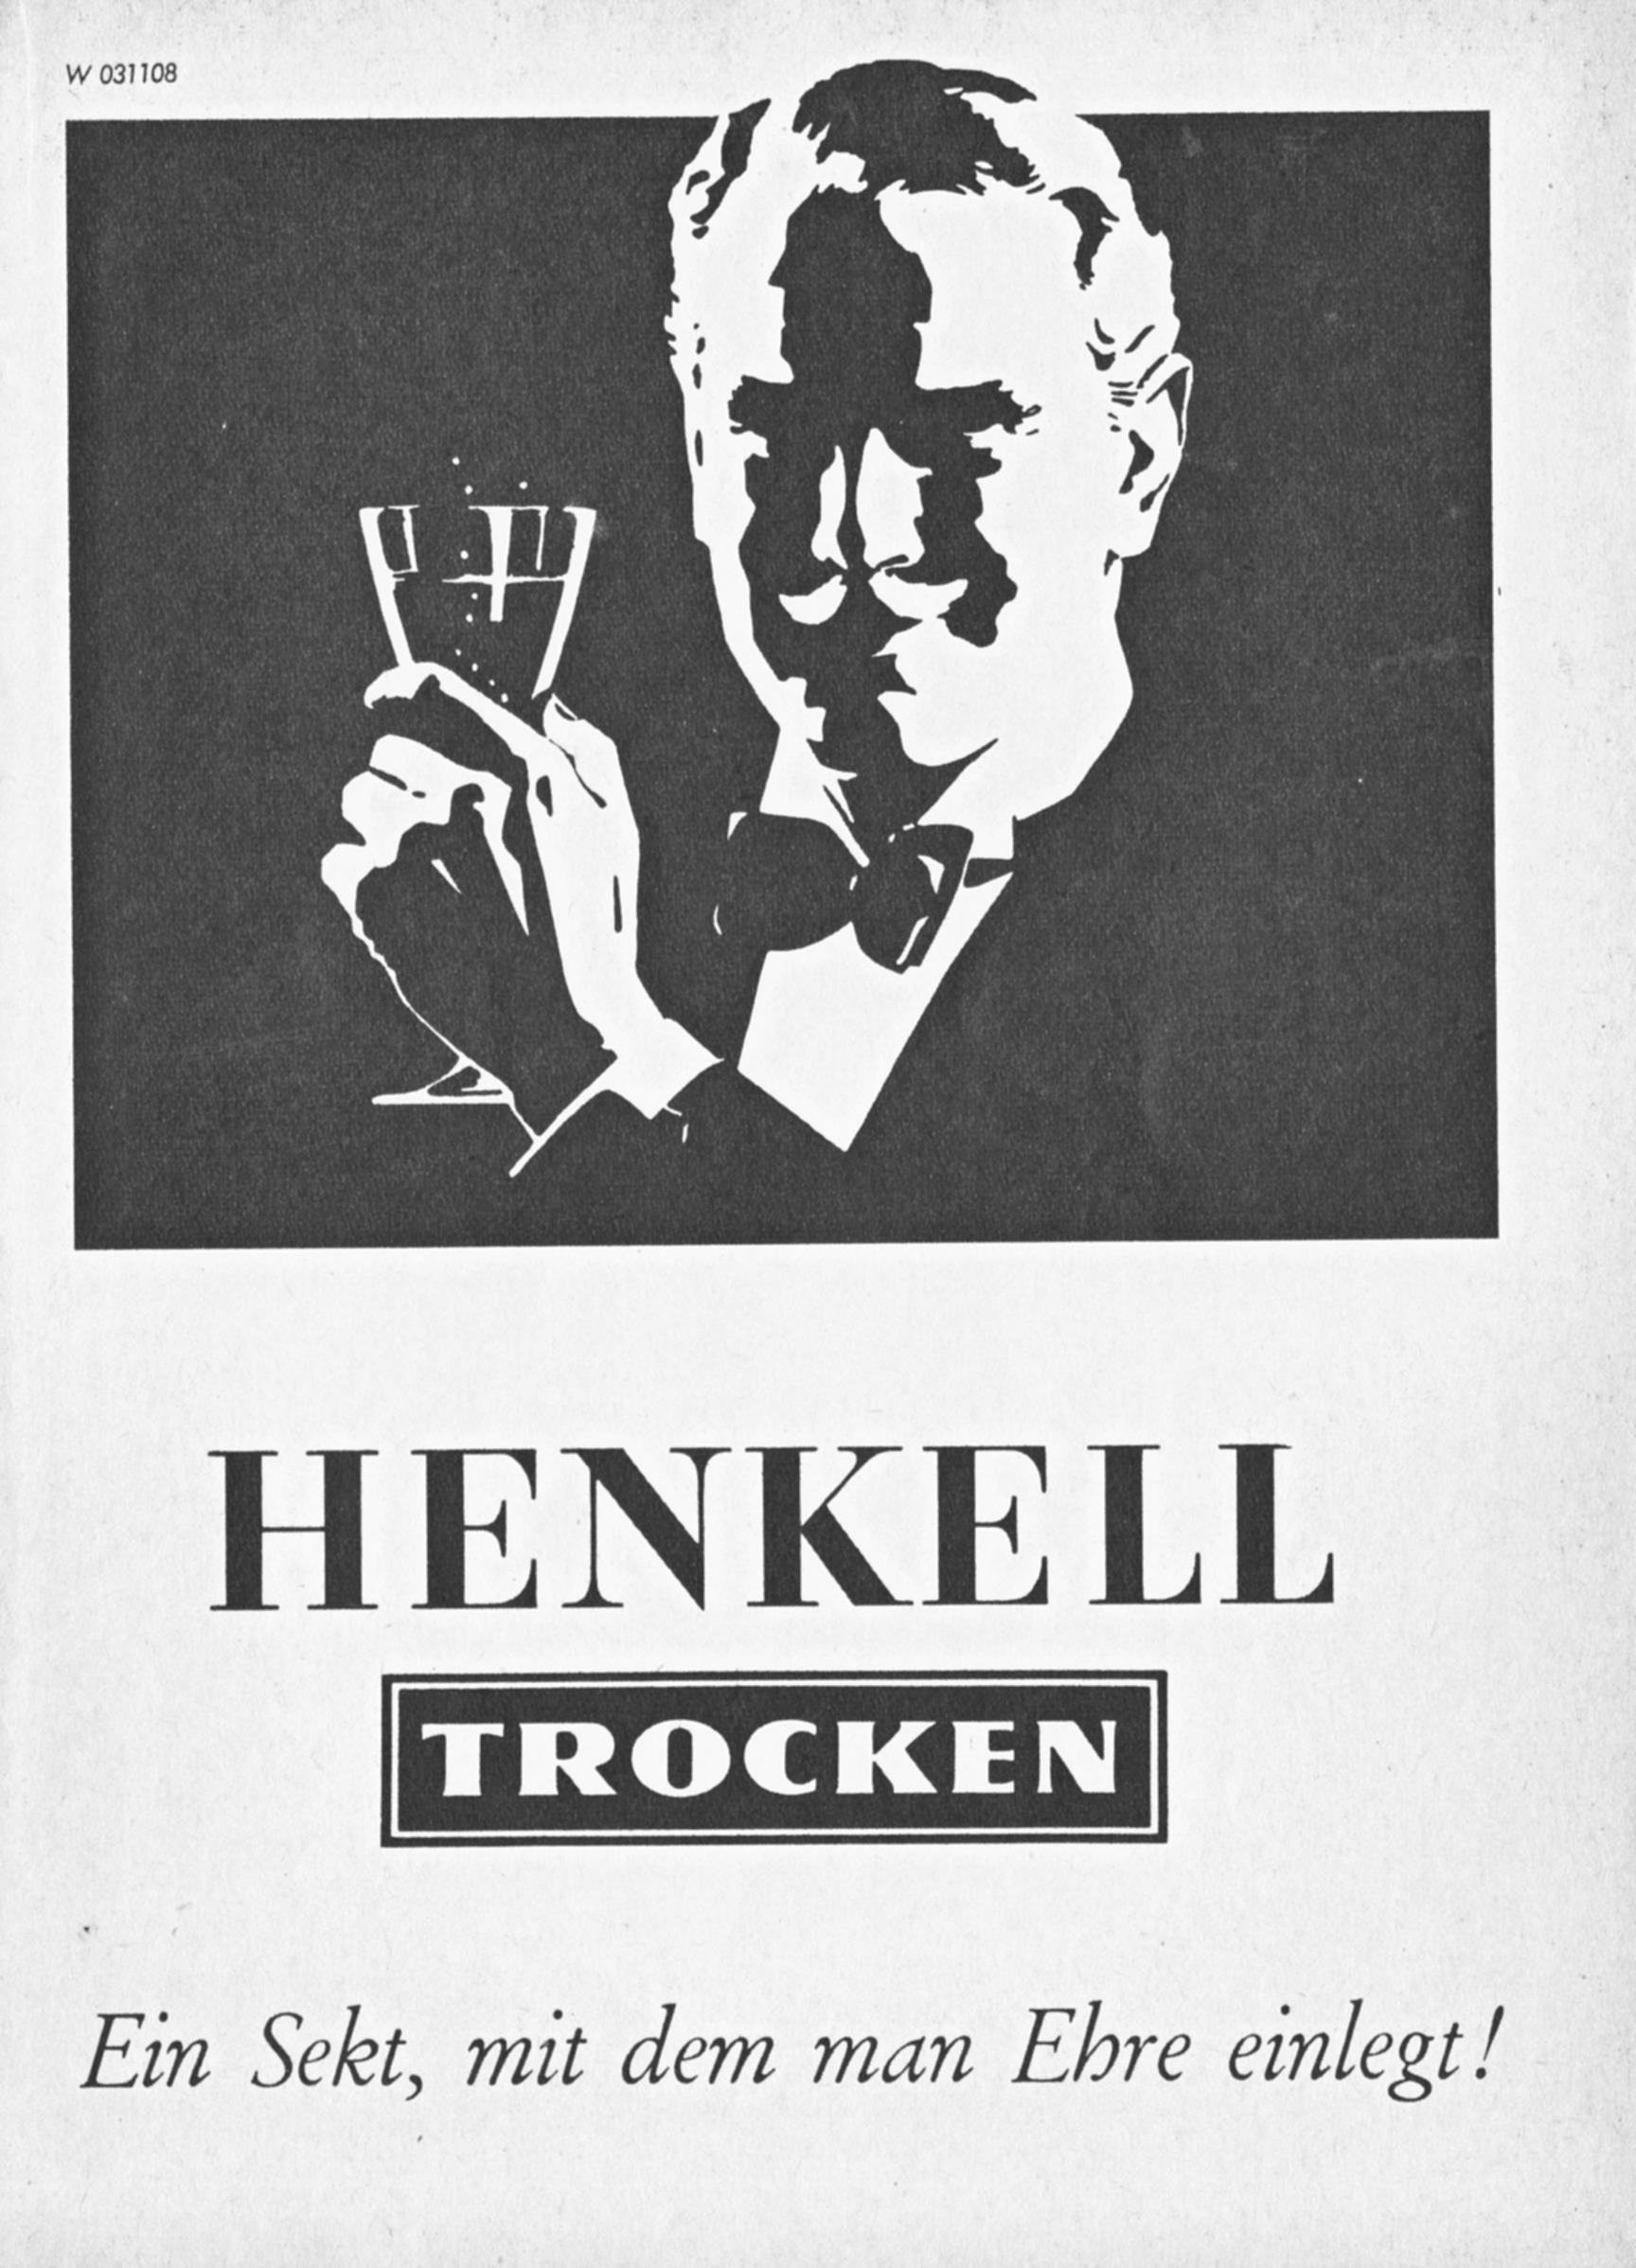 Jenkell Trocken 1960 H.jpg